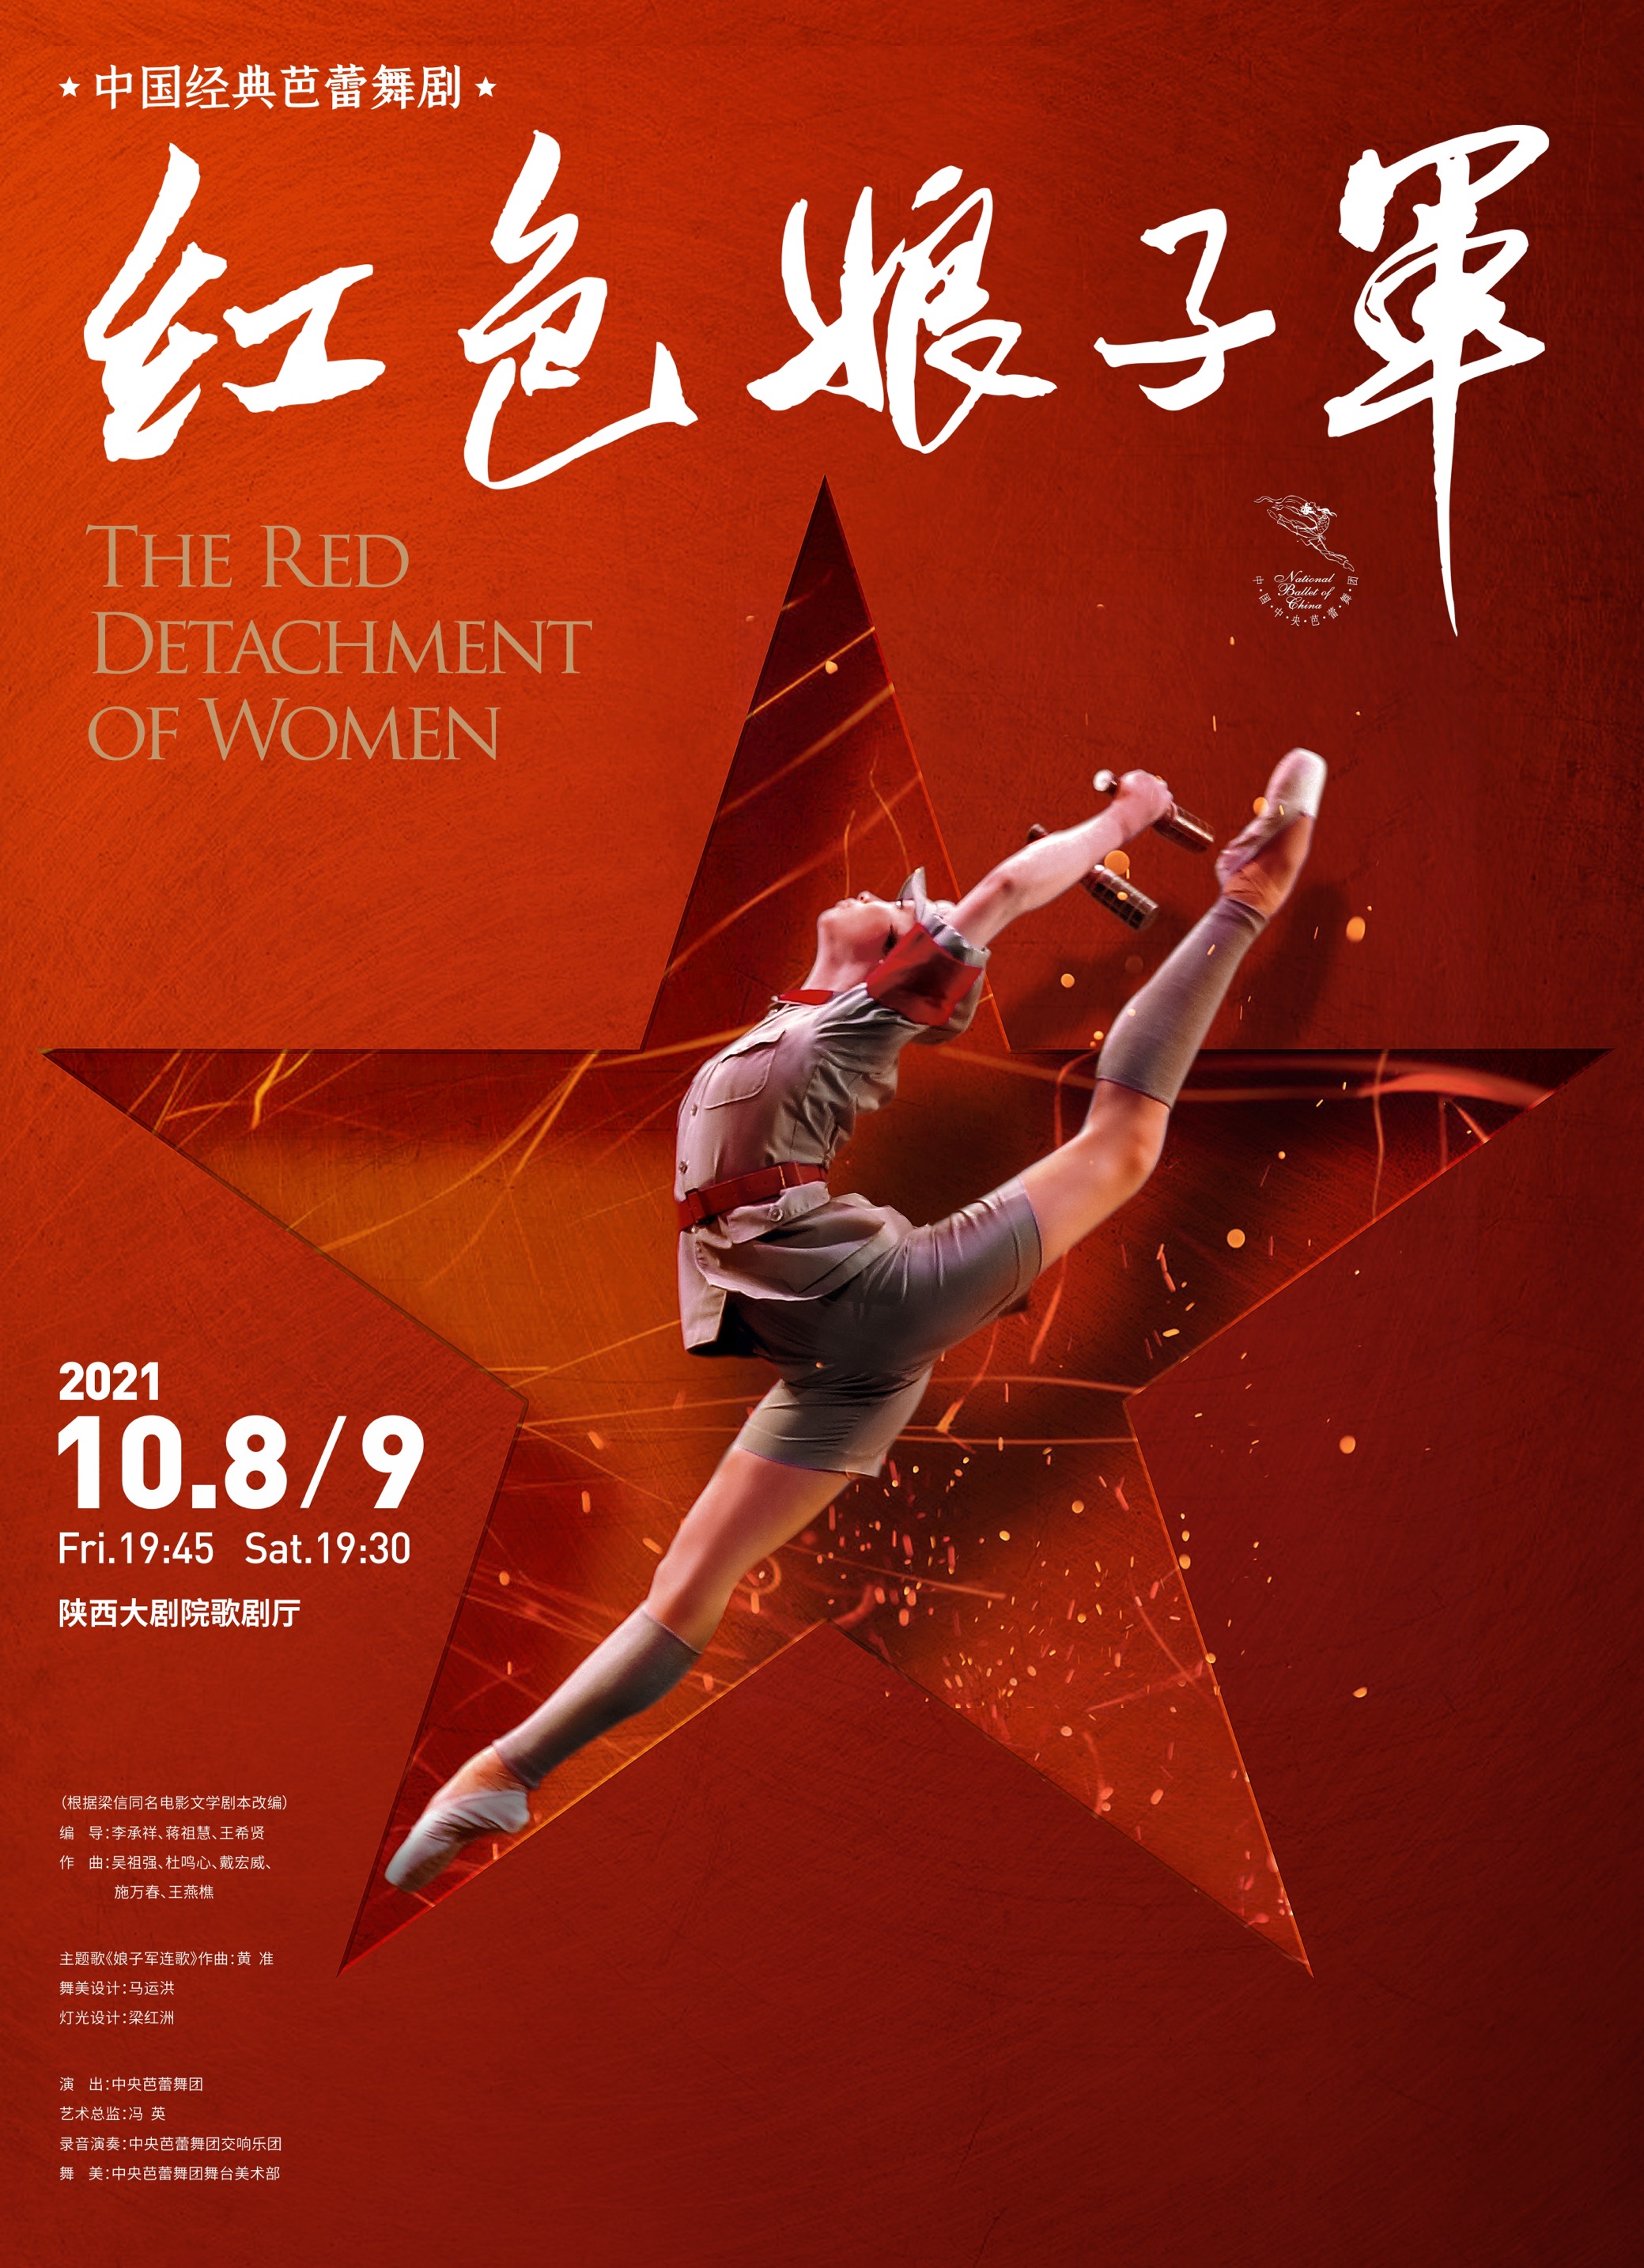 【第四届西安际舞蹈节·建百年单元】经典芭蕾舞剧《红色娘子》